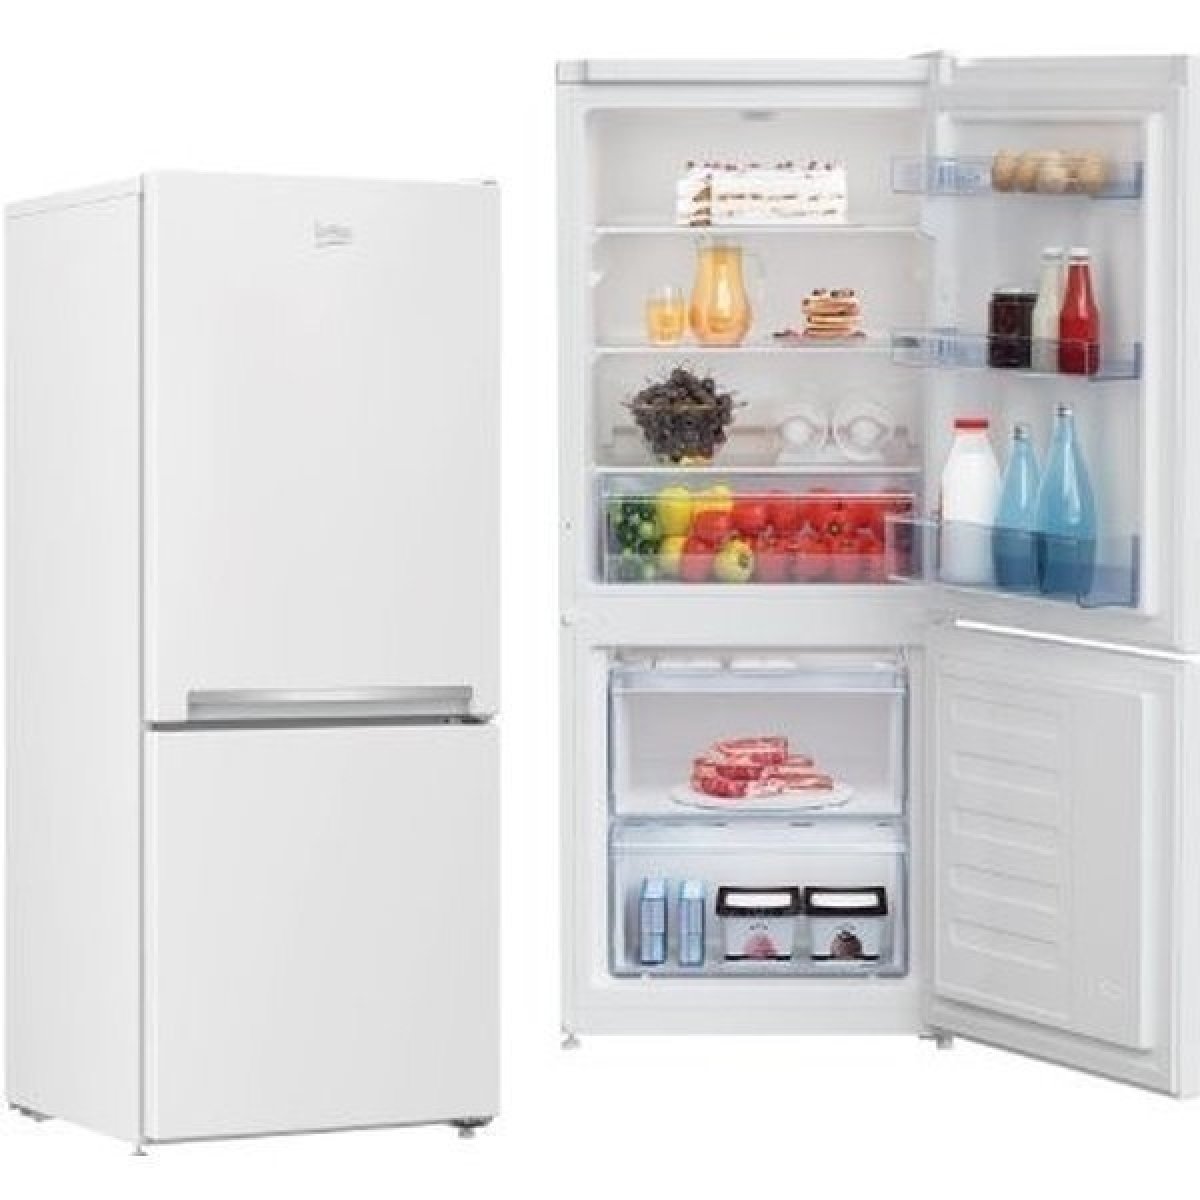 Praktická kompaktní lednice